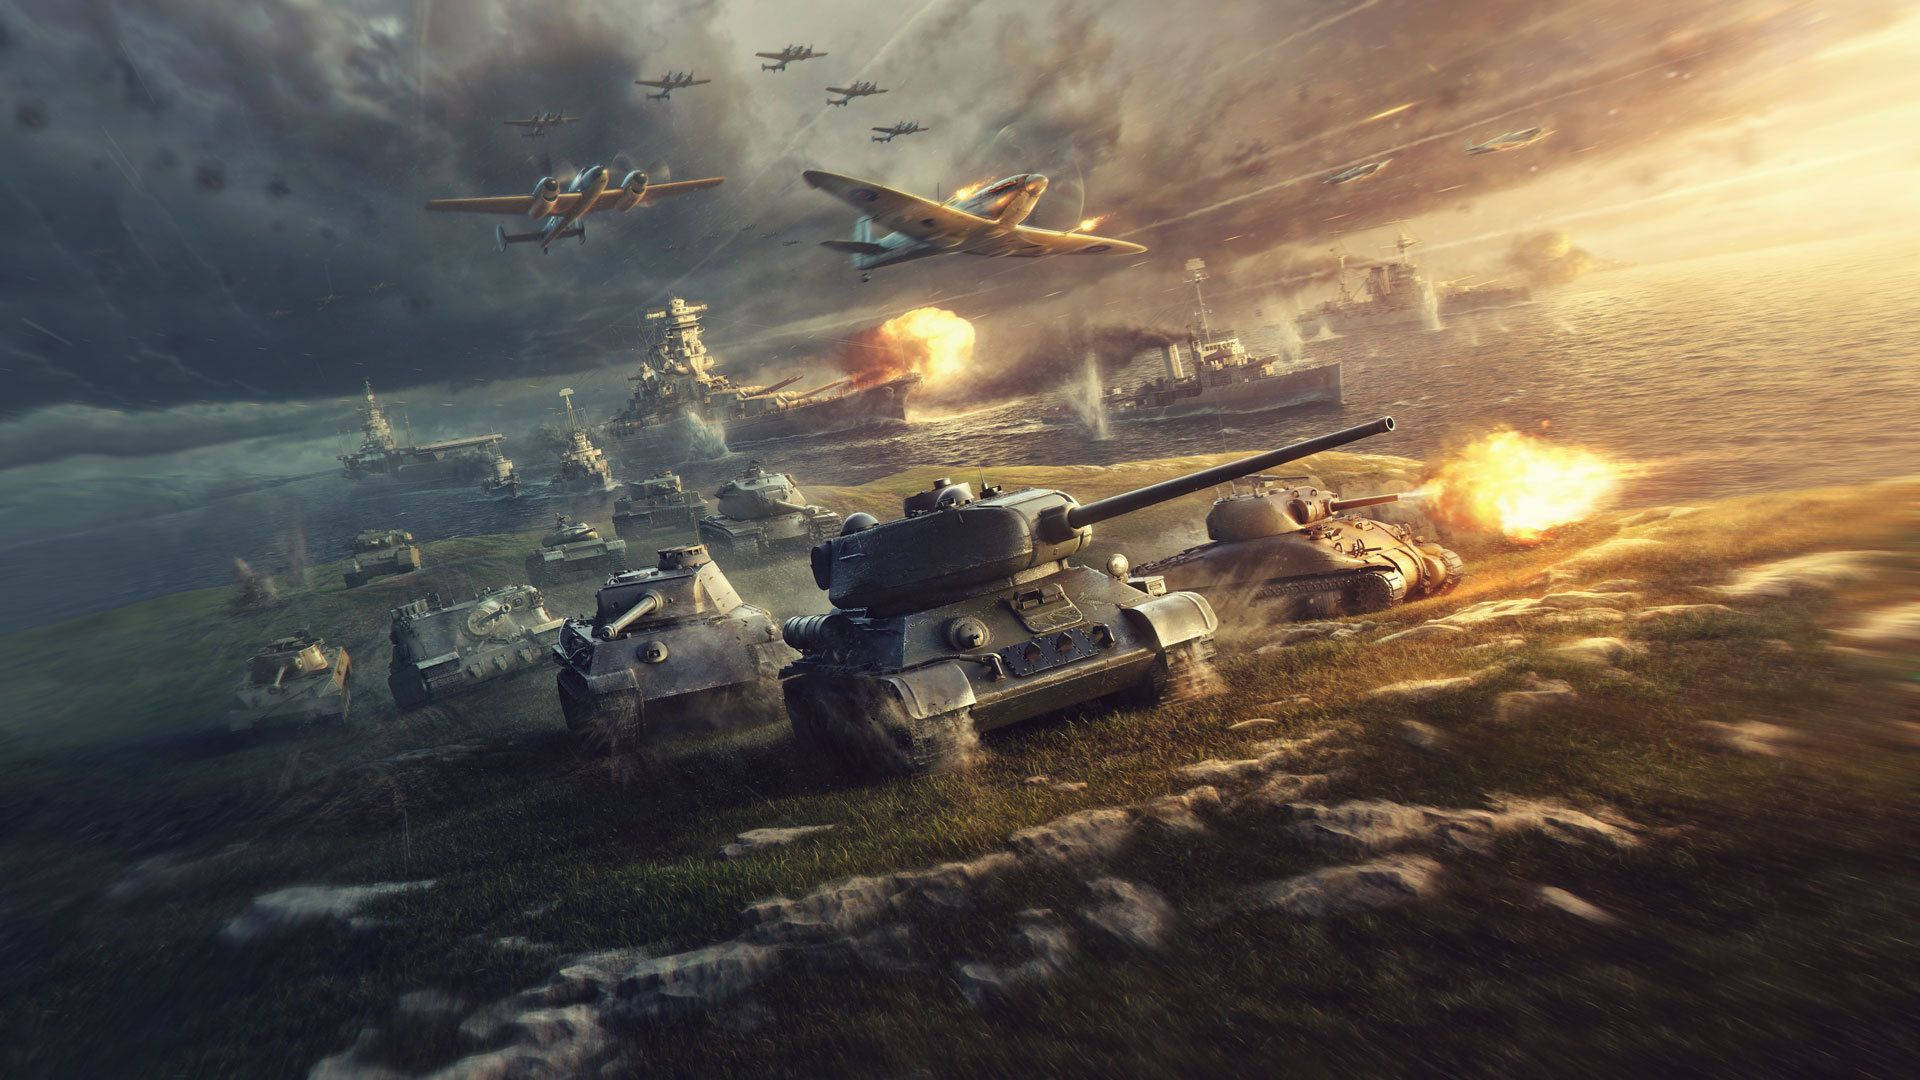 Caption: Epic Battle Scene In World Of Tanks Game Wallpaper